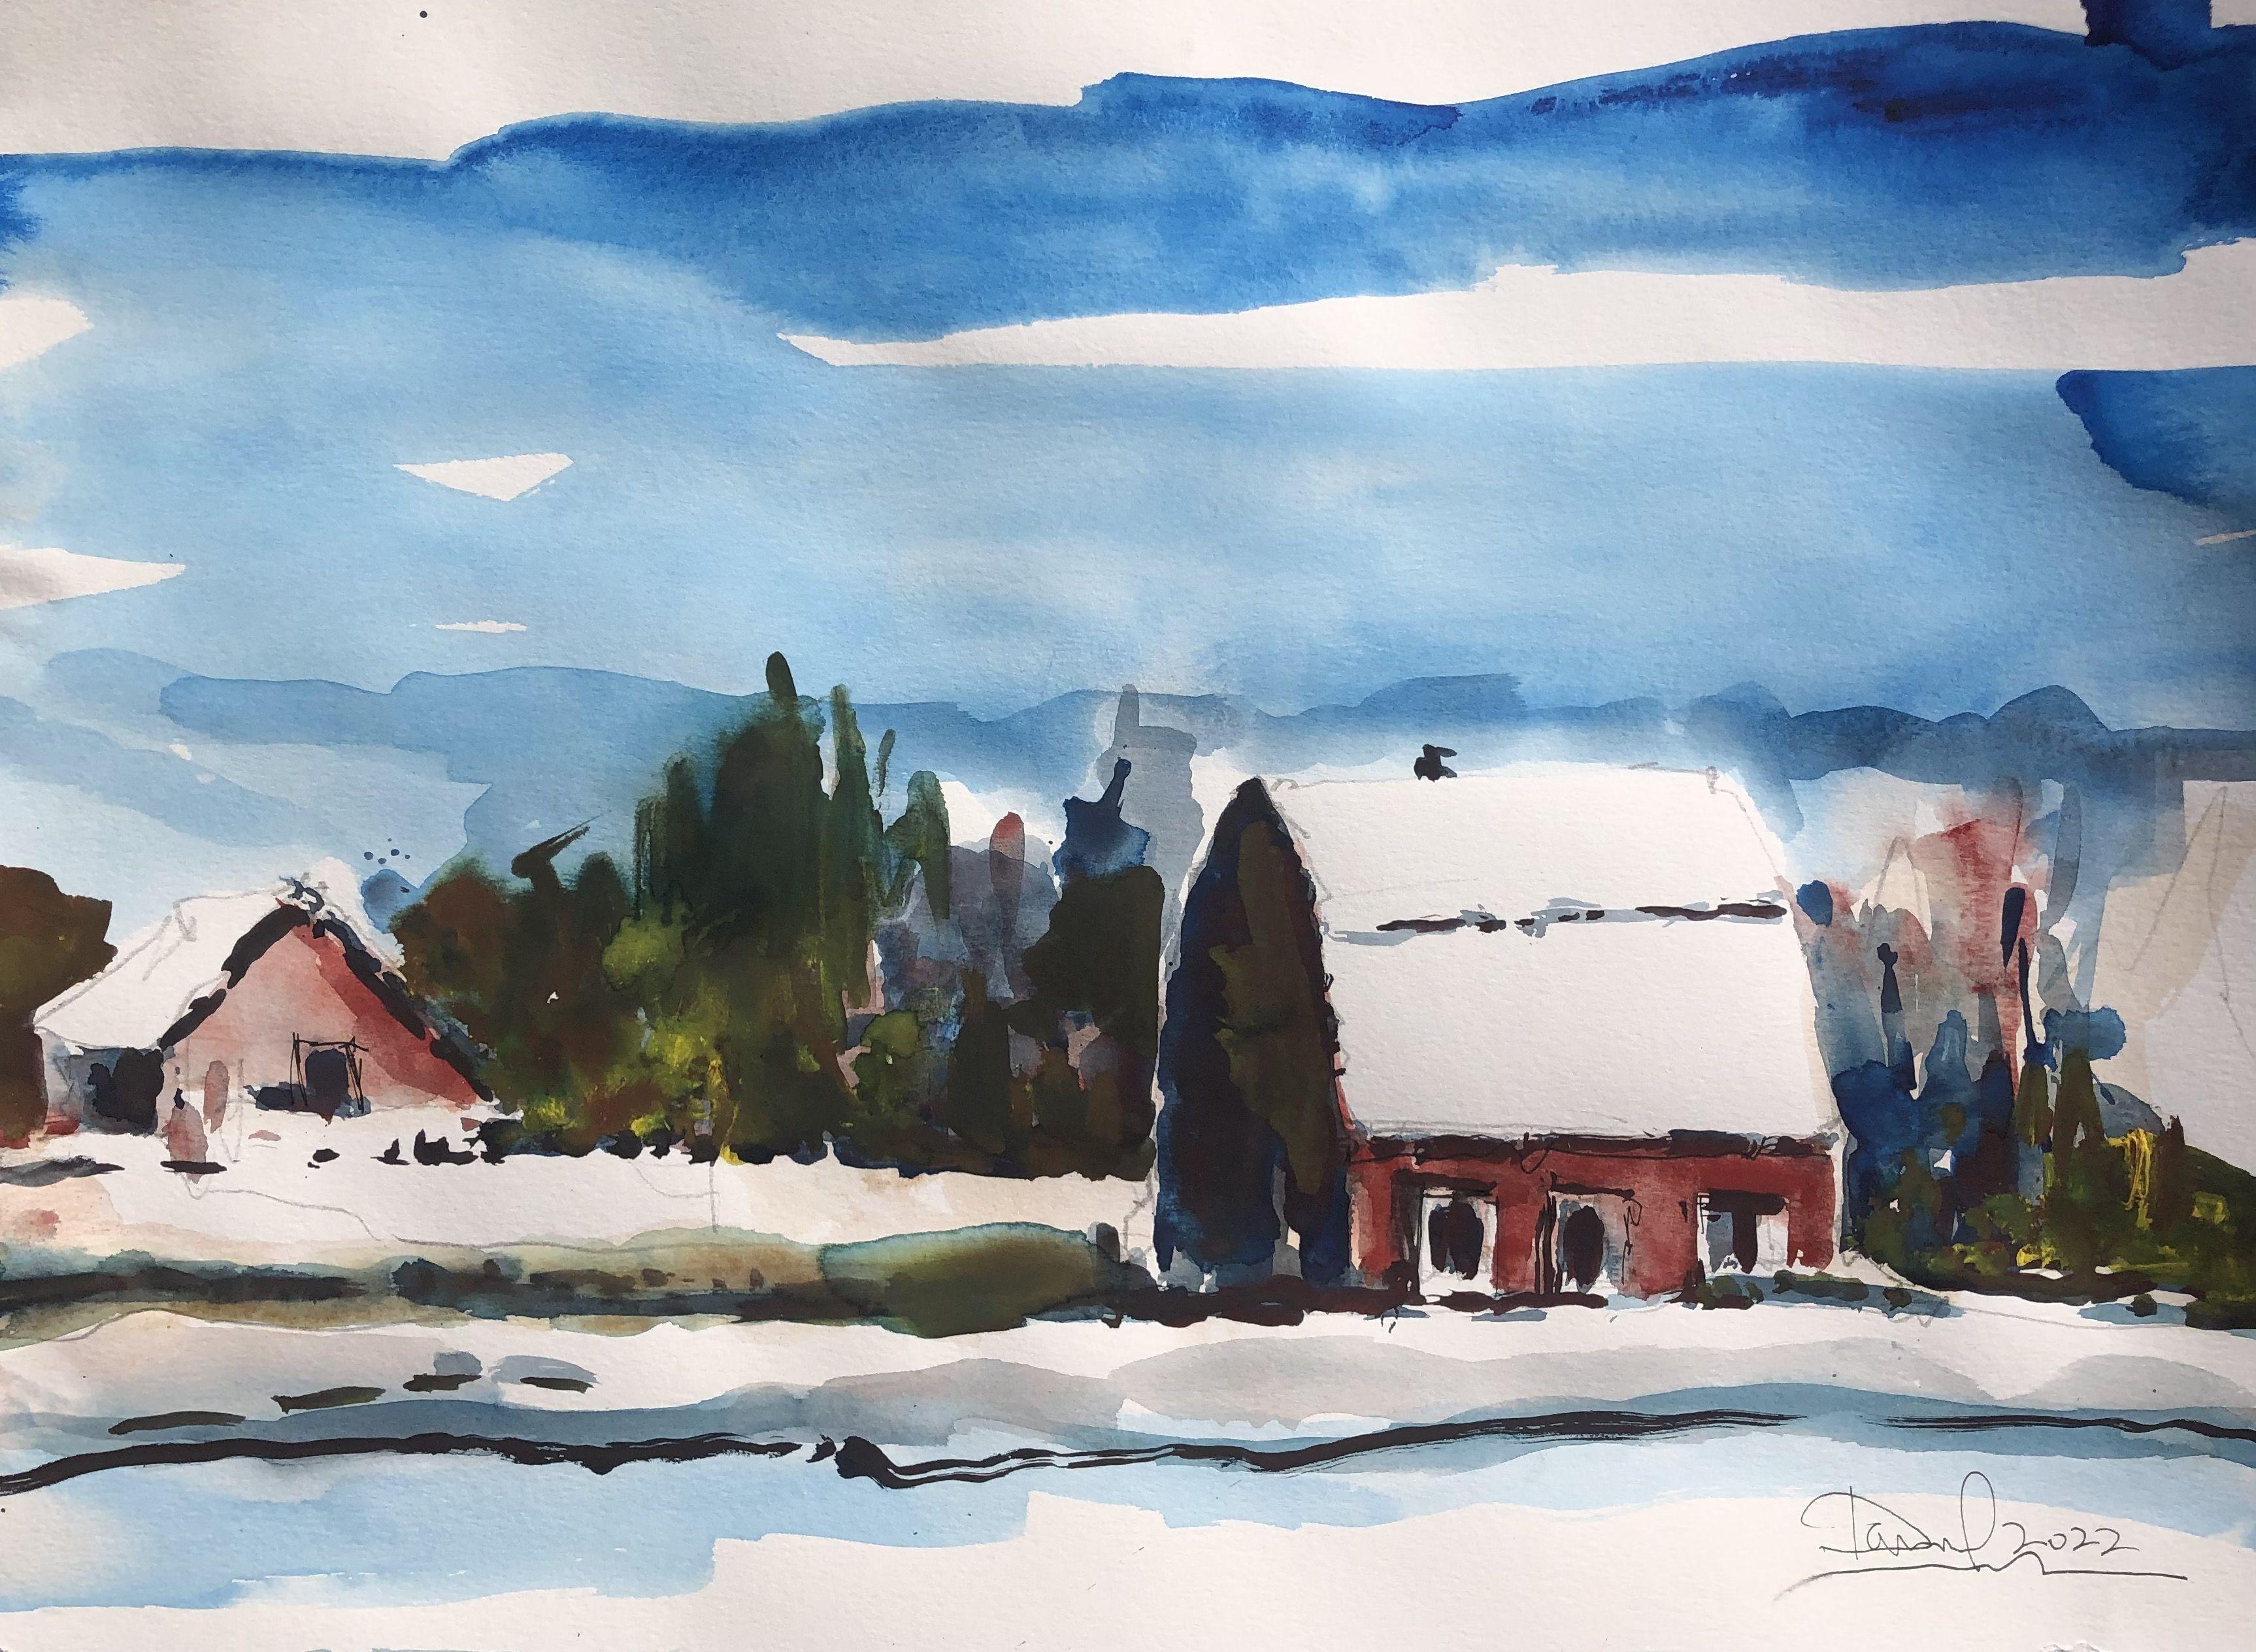 Alberta Winter Scene, Painting, Watercolor on Watercolor Paper - Art by Daniel Clarke